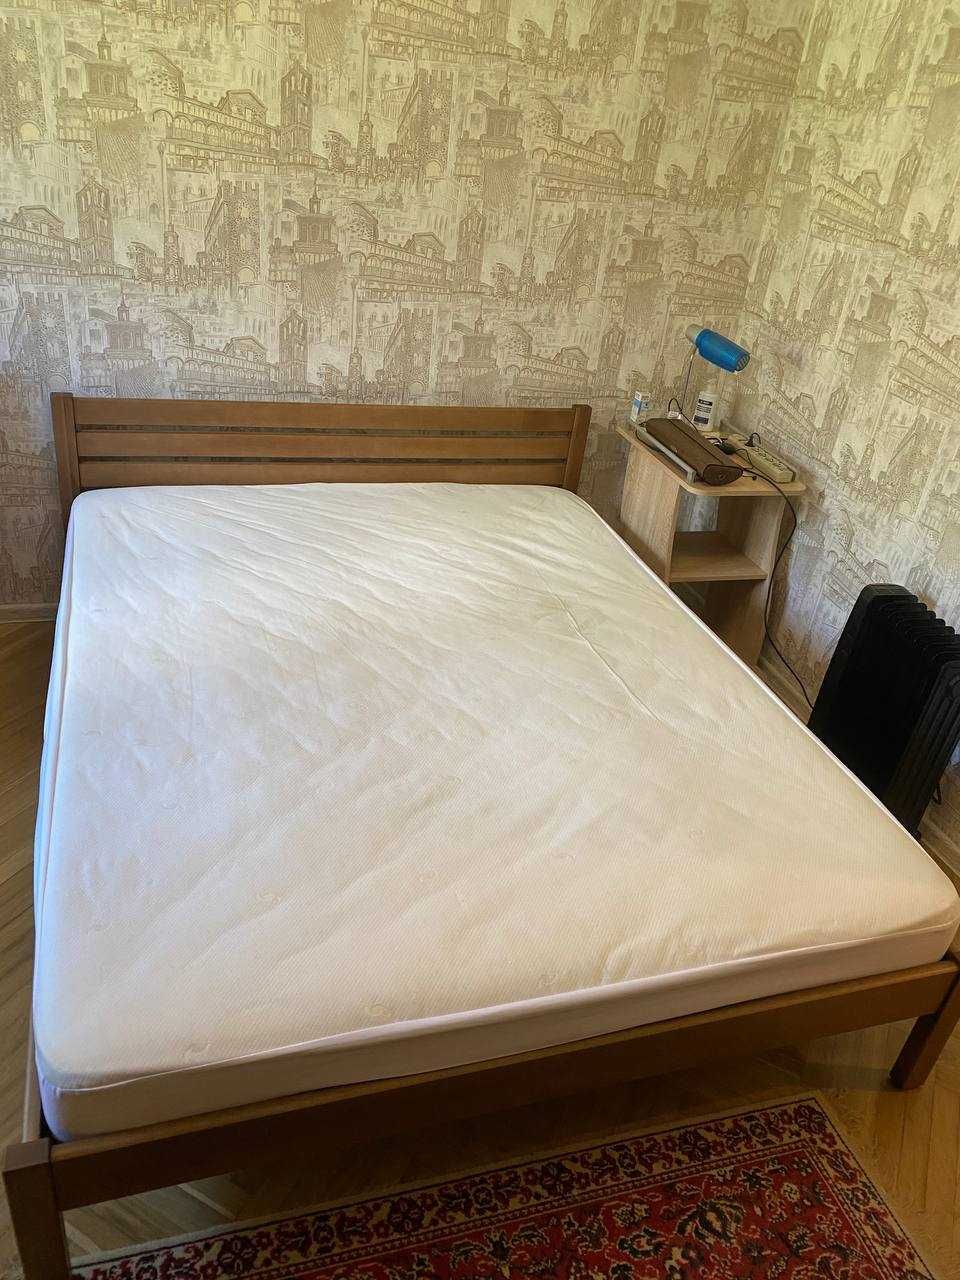 Продам дерев'яне ліжко Корніка з матрацем 160x200 - НОВЕ! Супер ціна!